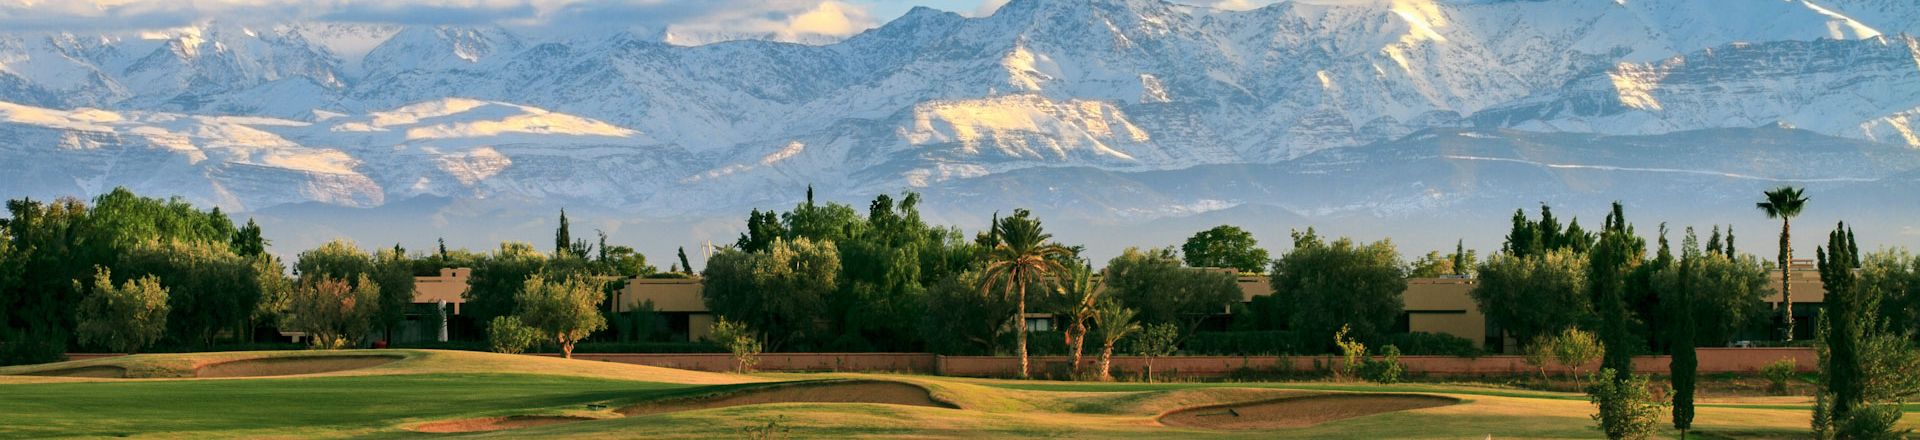 Golf in Marrakech